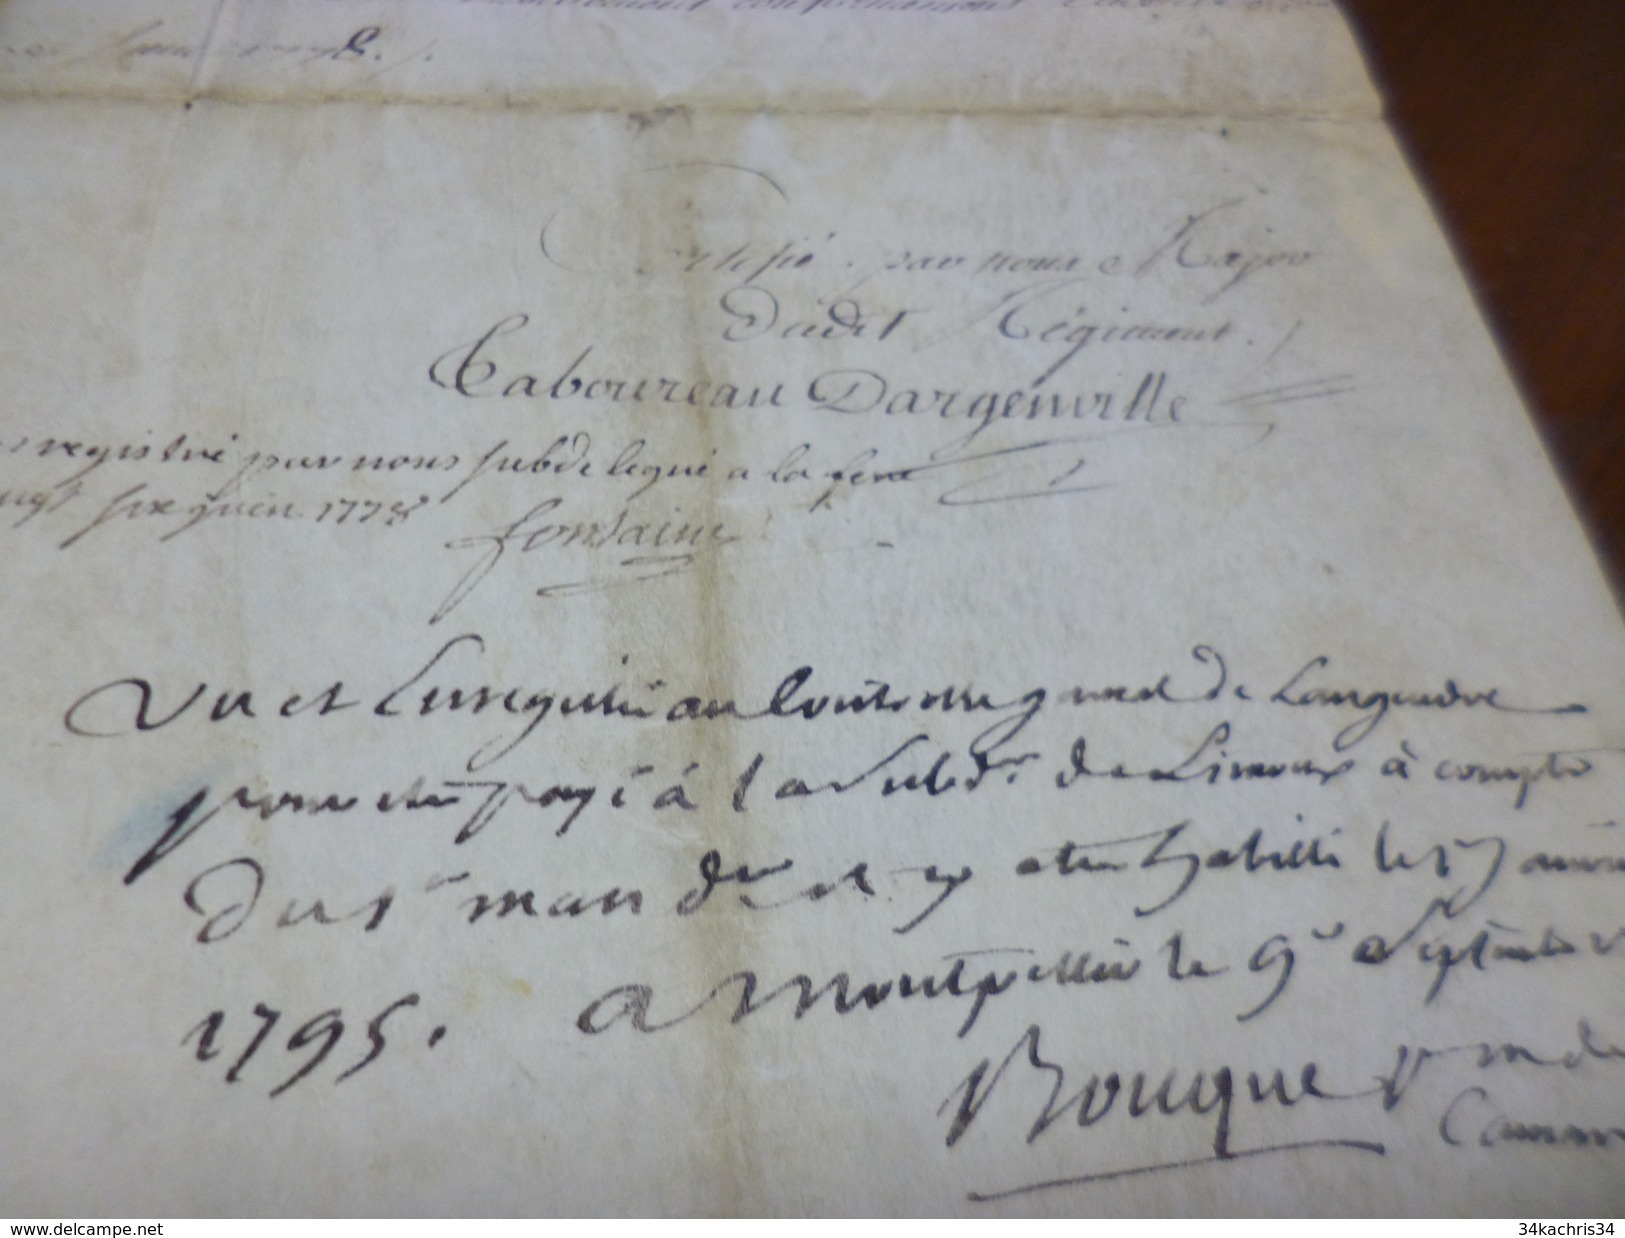 Parchemin certificat admission pension d184 saint Jean d'Angely 1775 Corps royal artillerie Cie Bombardiers de Rotarier